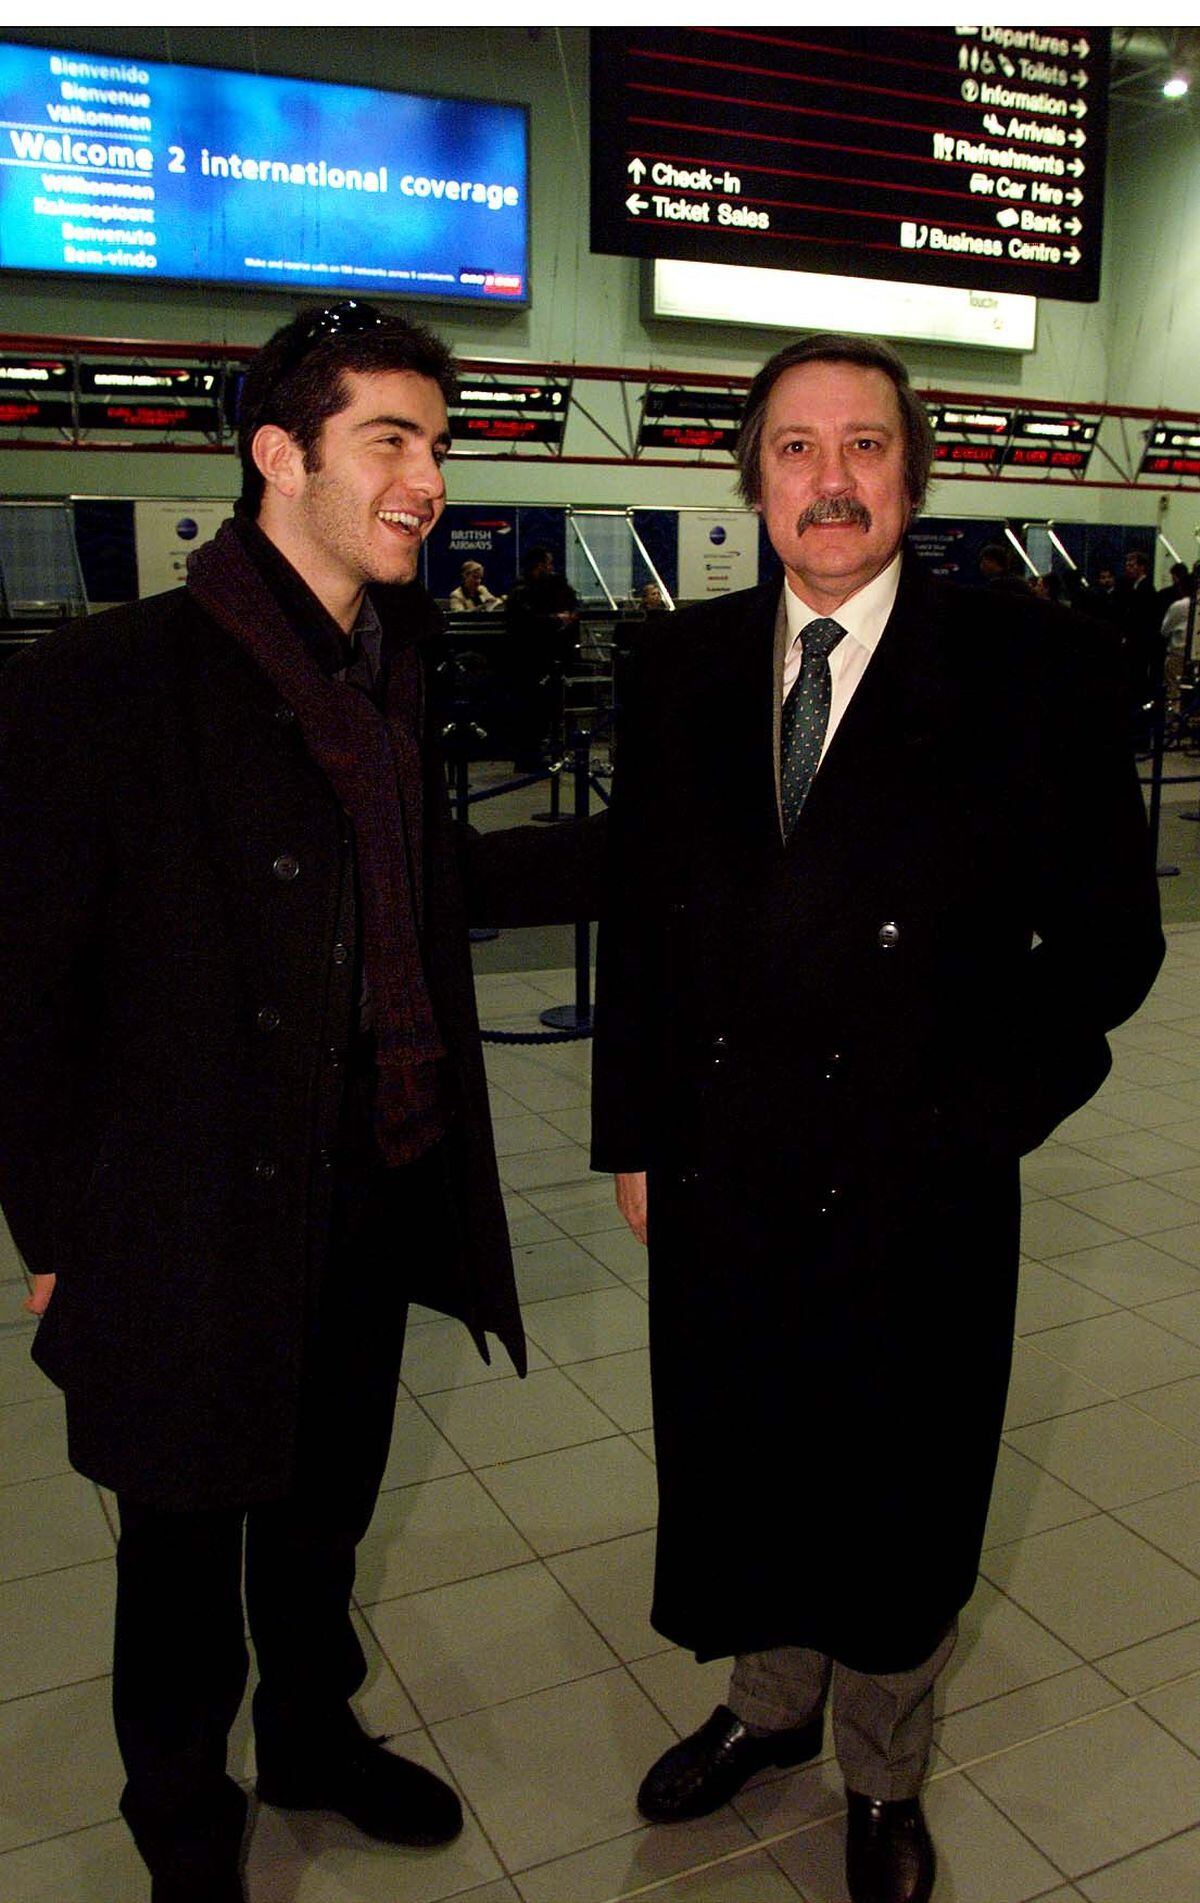     La star di Pages Enzo Marisca è stata fotografata questa mattina all'aeroporto di Birmingham con il presidente dell'IBF Paul Thompson prima di volare a Milano.